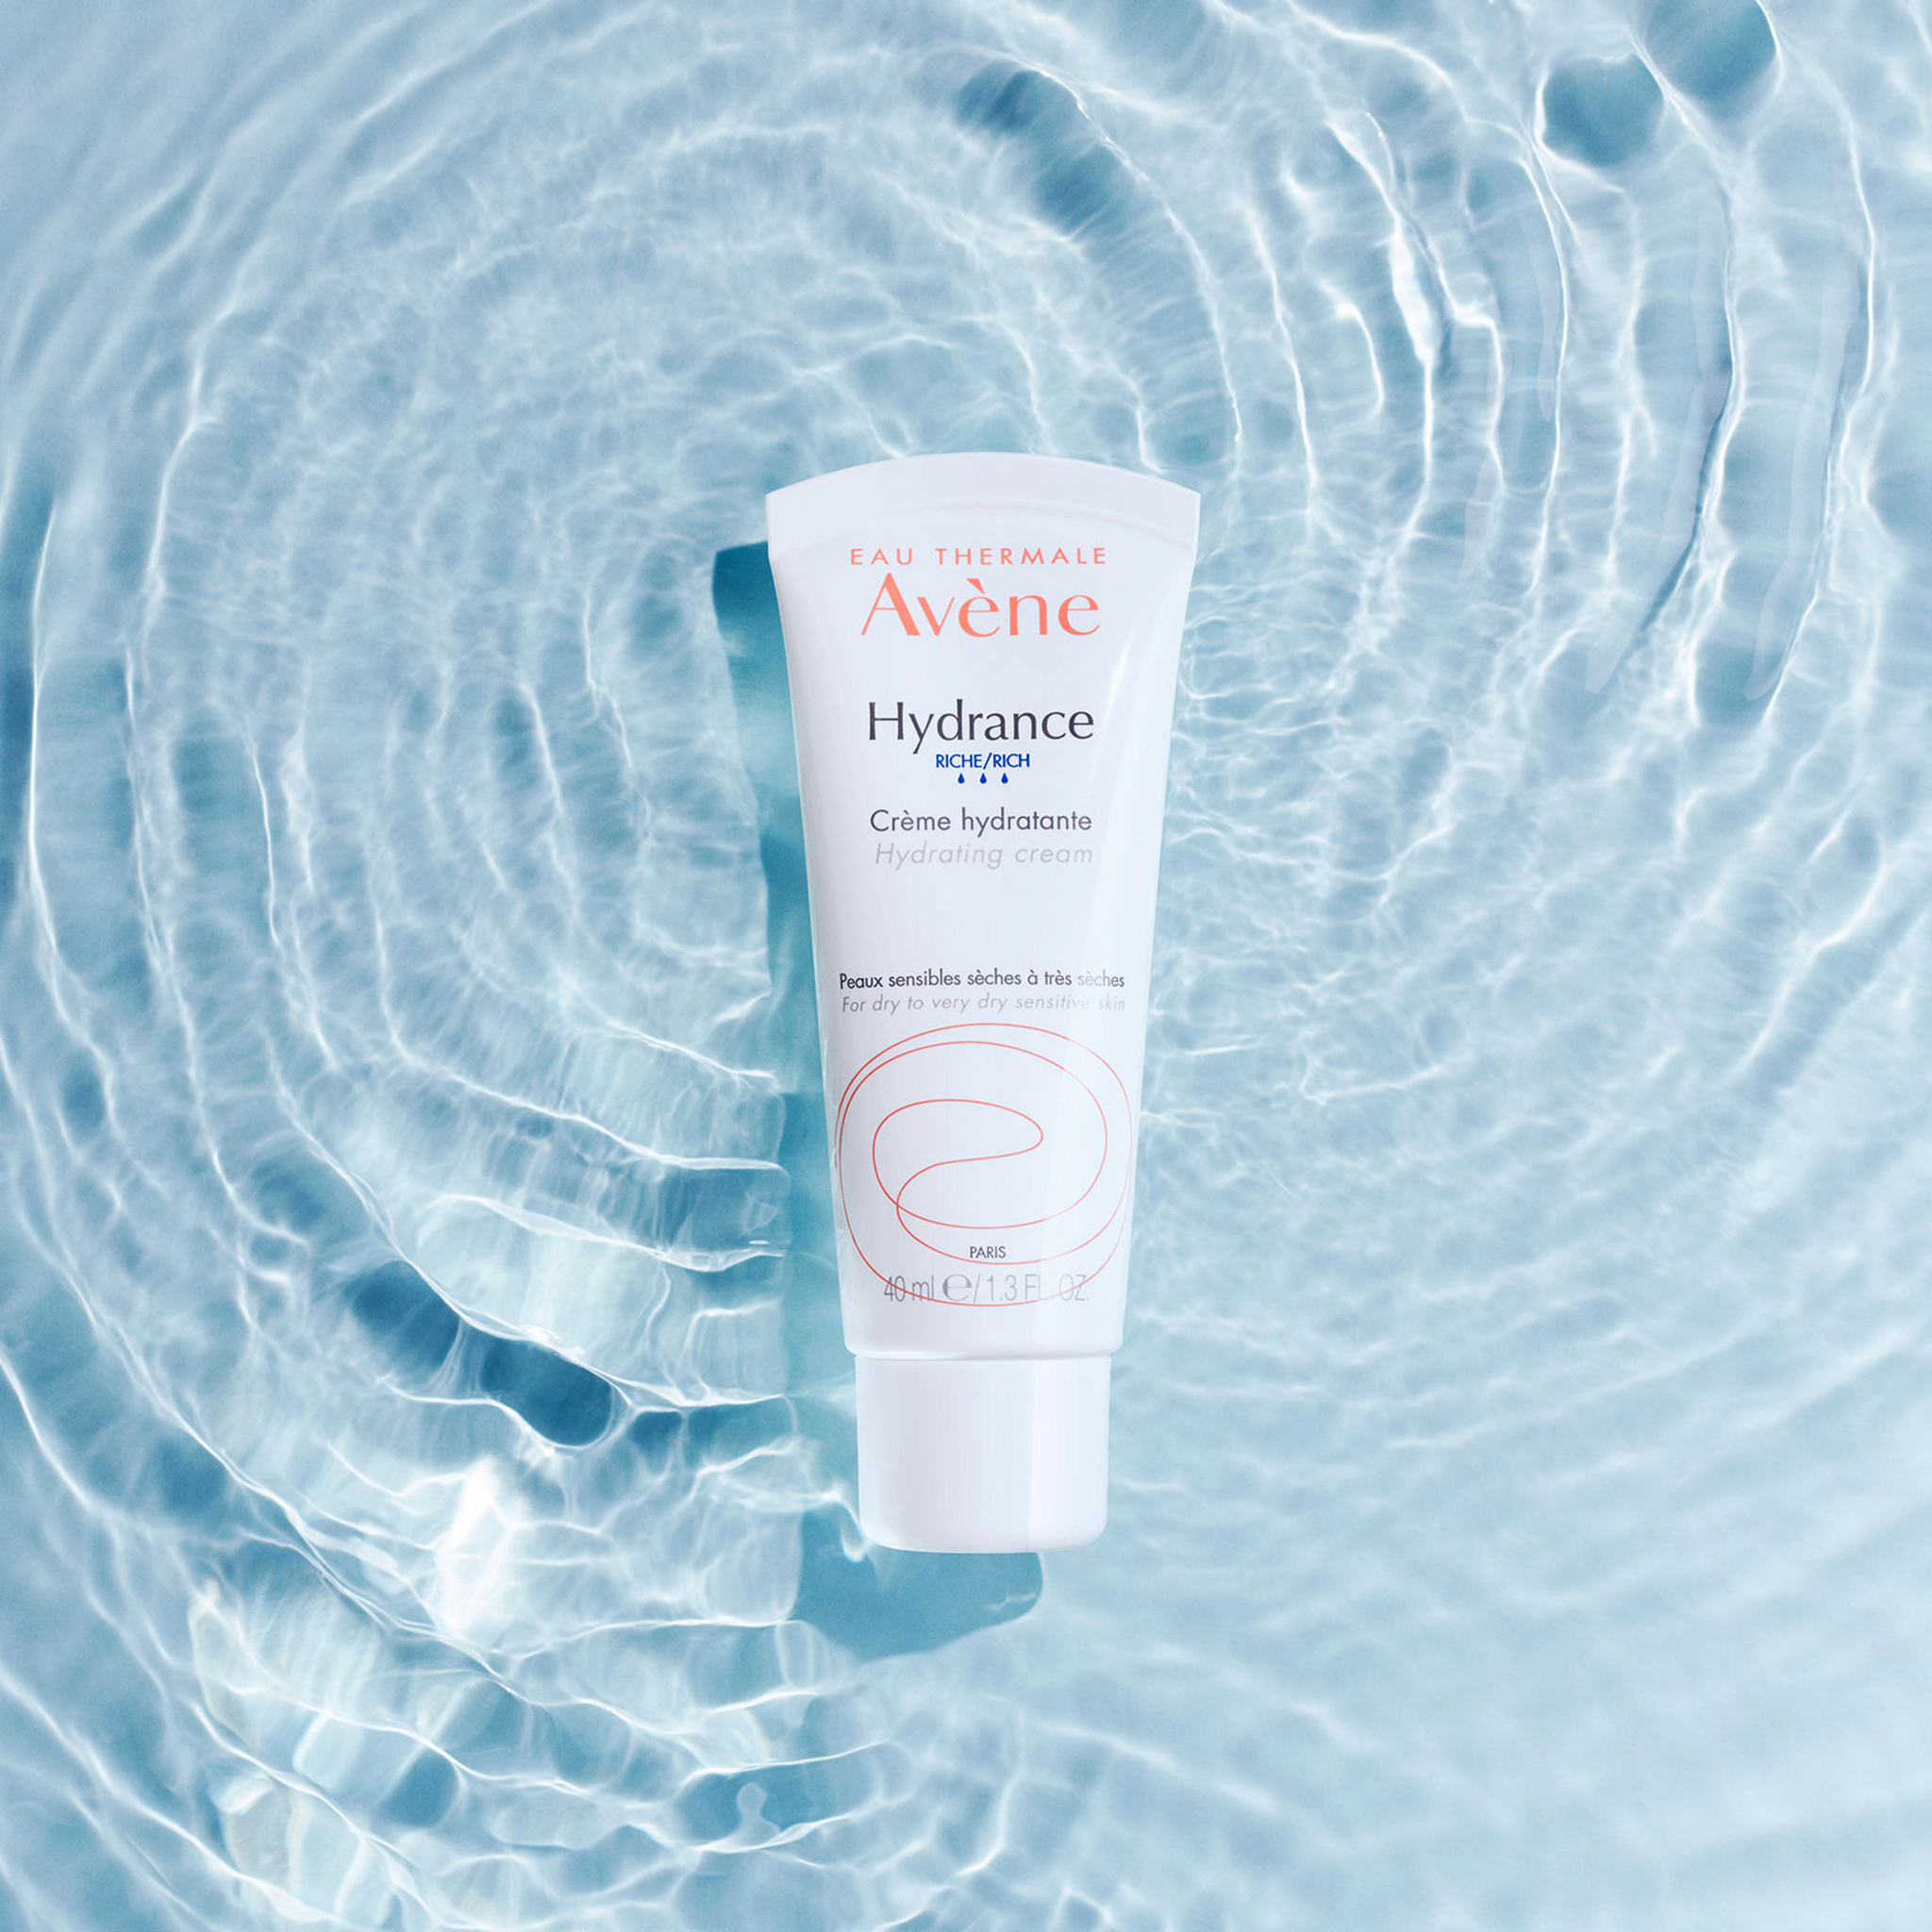 Avène Hydrance Rich Hydrating Cream 40ml - Moisturiser for Dehydrated Skin